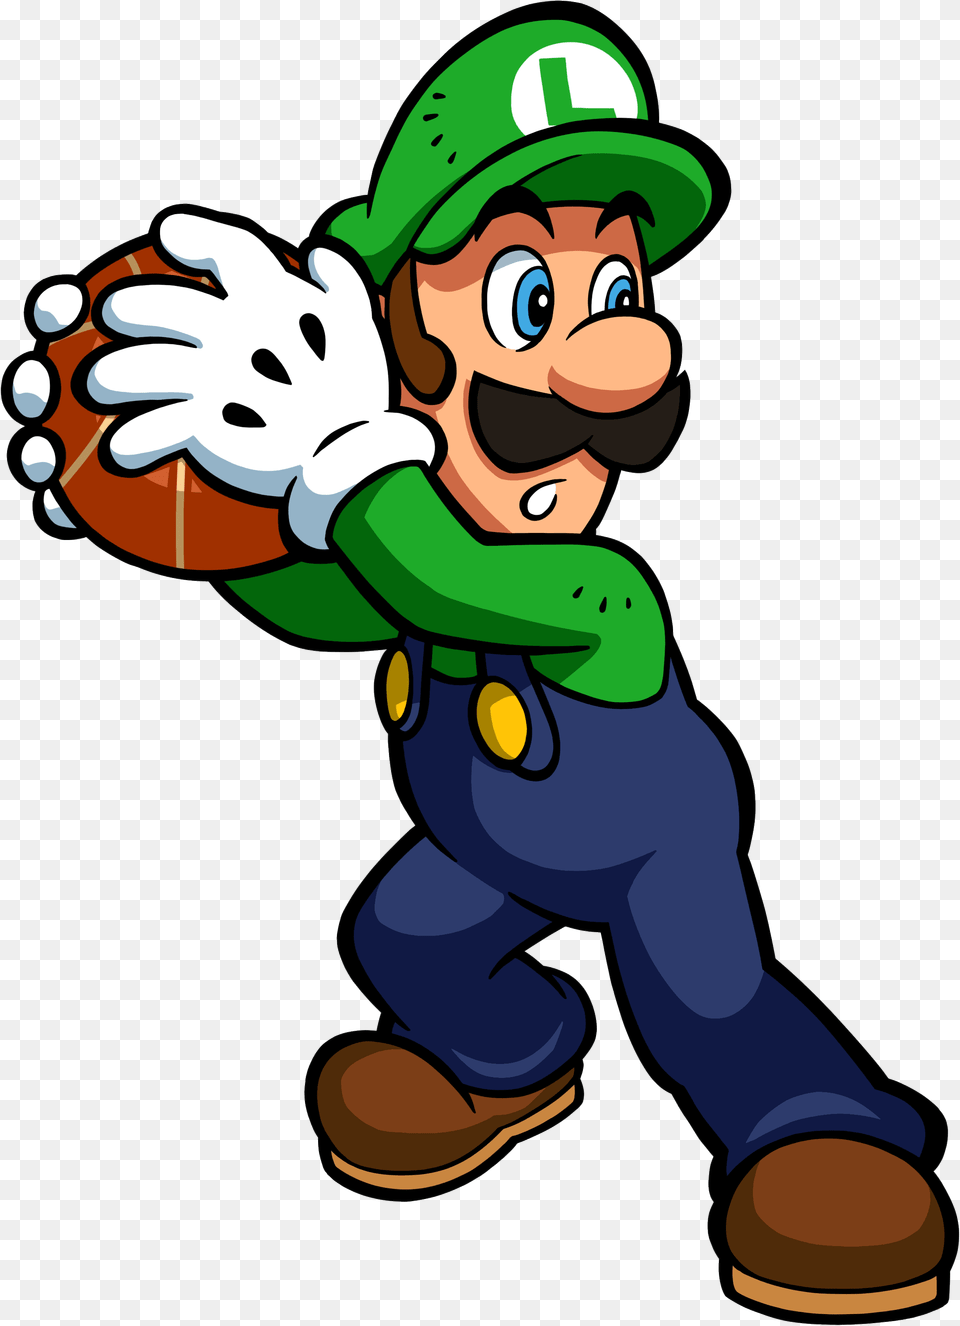 Luigi Hoops Mario Hoops 3 On 3 Luigi, Baby, Person, Face, Head Png Image